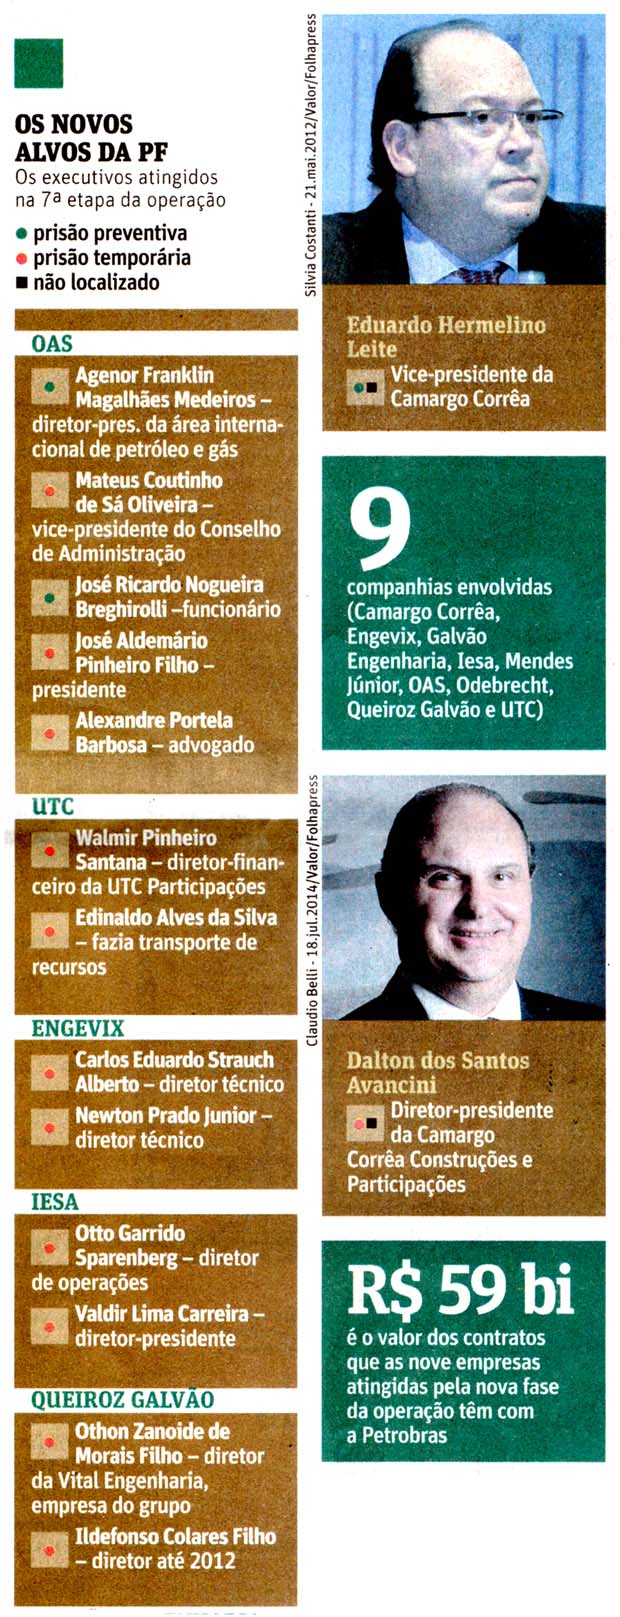 Folha de São Paulo - 15/11/14 - Petrobras: Execcutivos de empreiteiras para a cadeia - Folhapress